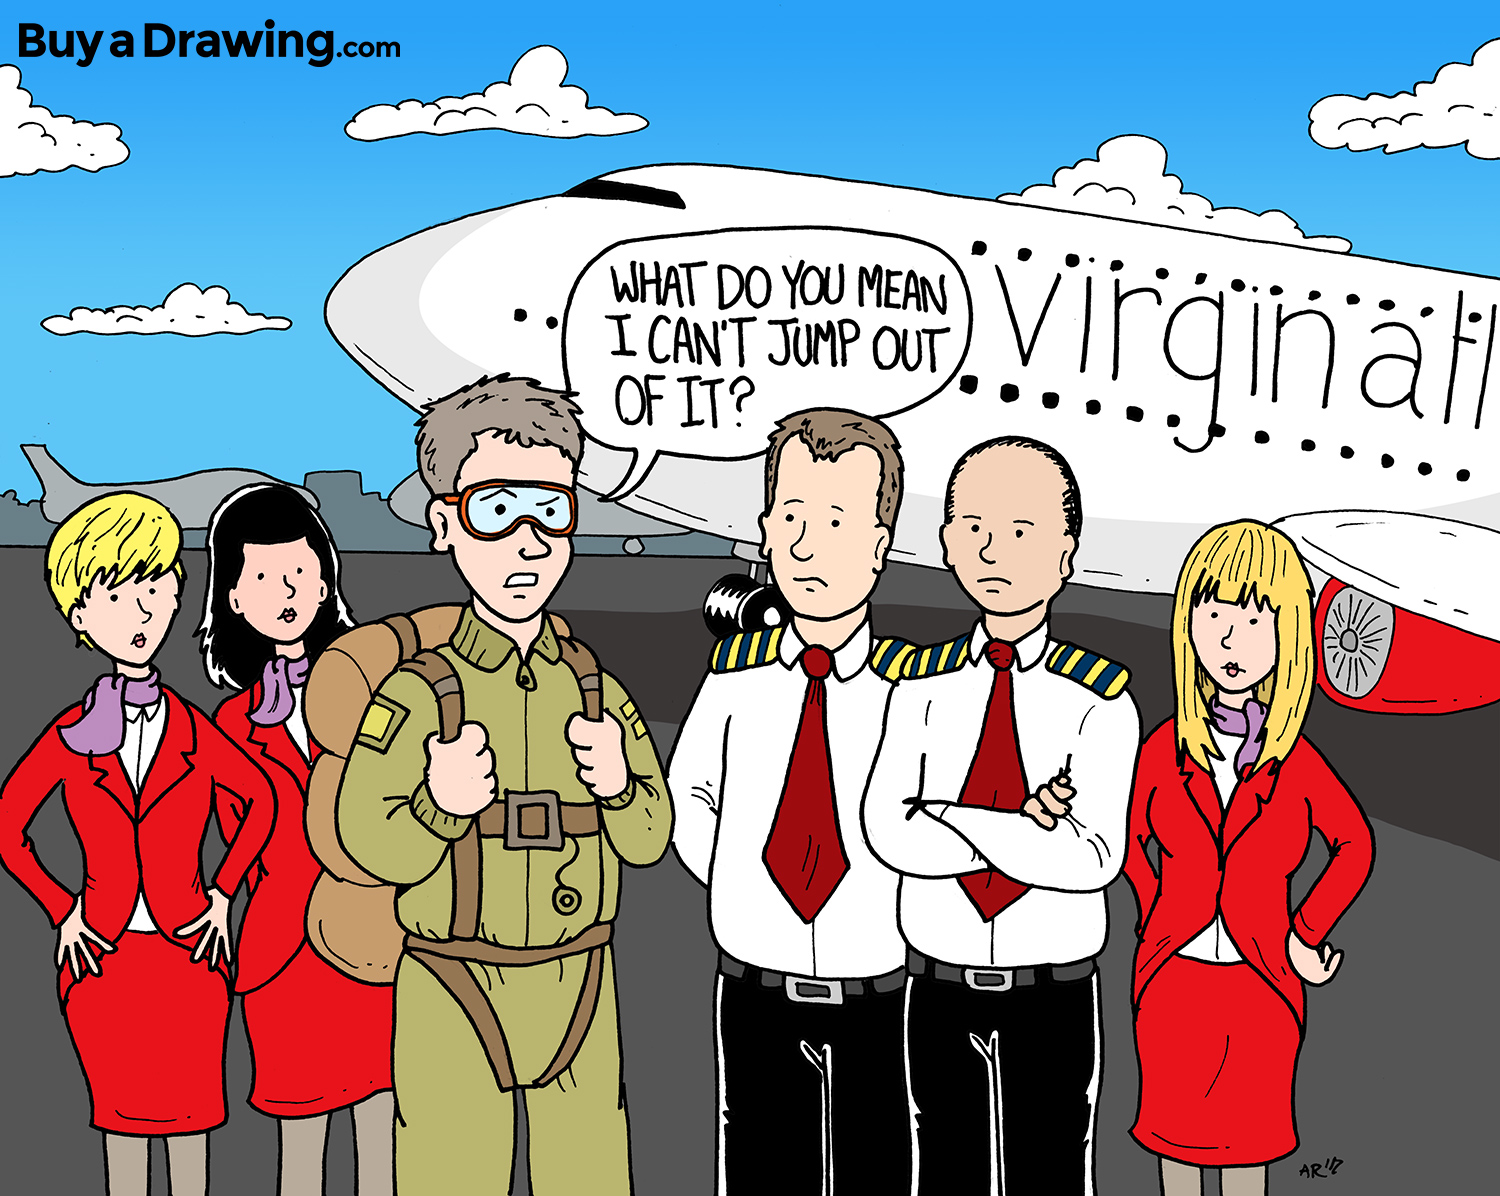 Airline Pilot Cartoon Gift Drawing for Virgin Atlantic